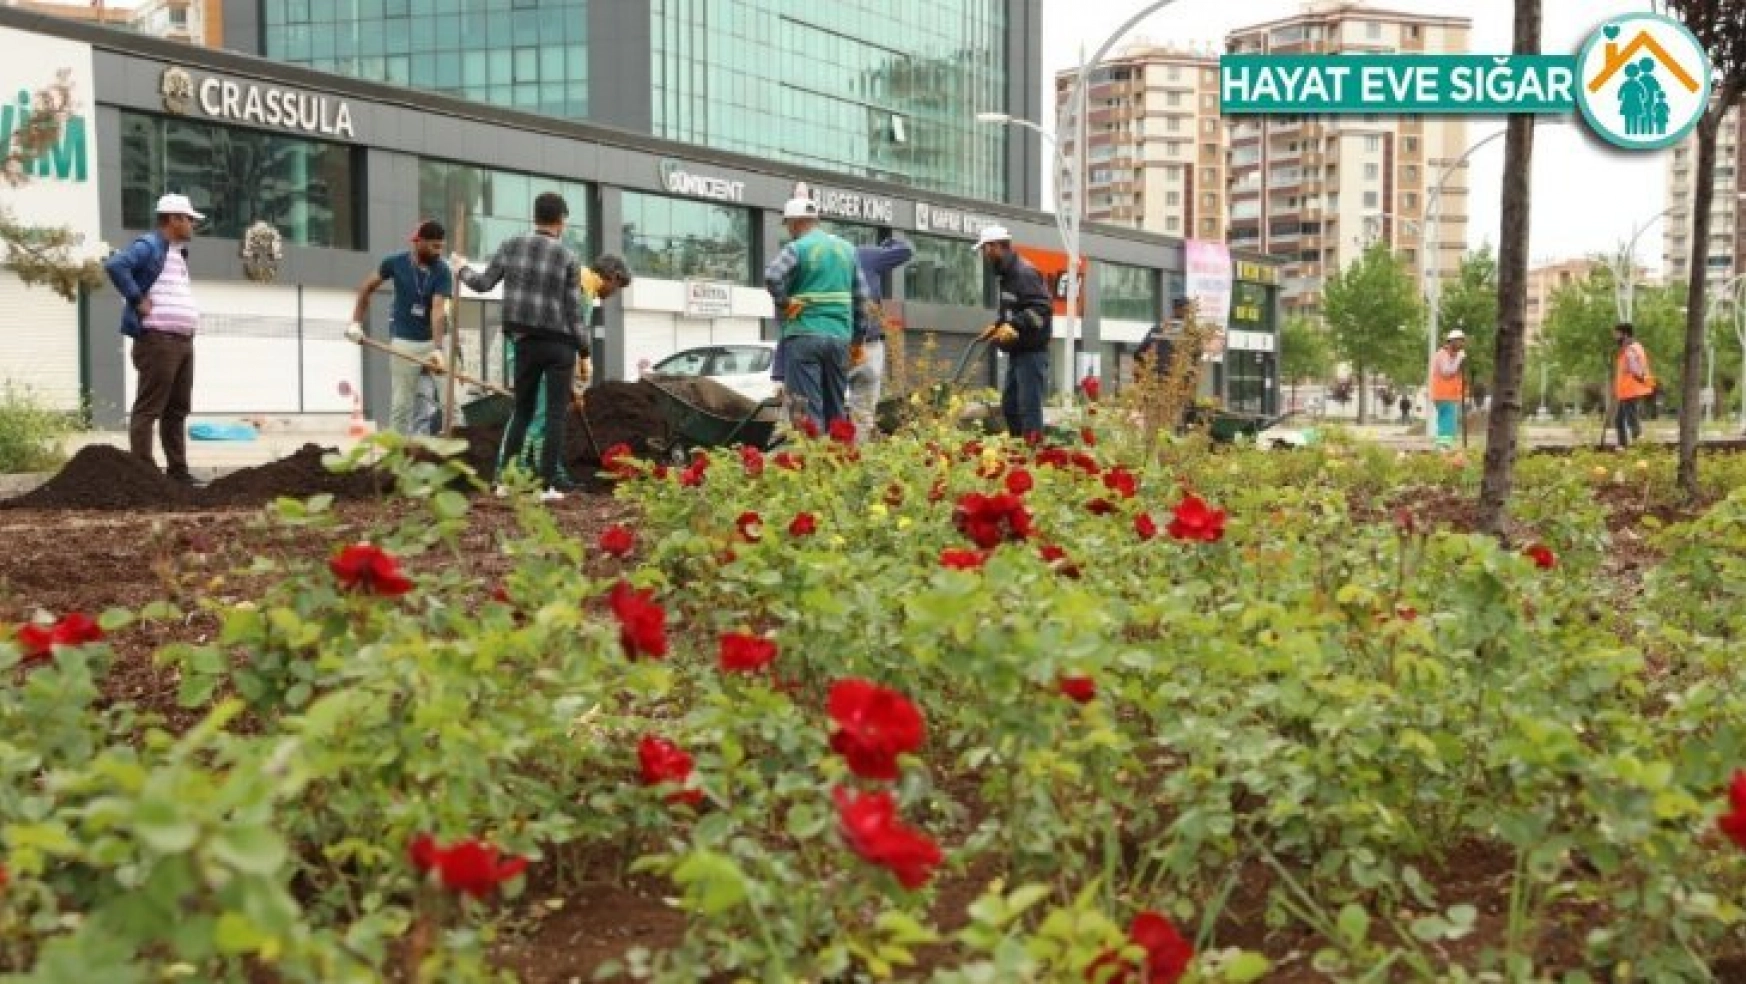 Büyükşehir çalışıyor, Diyarbakır yeşilleniyor